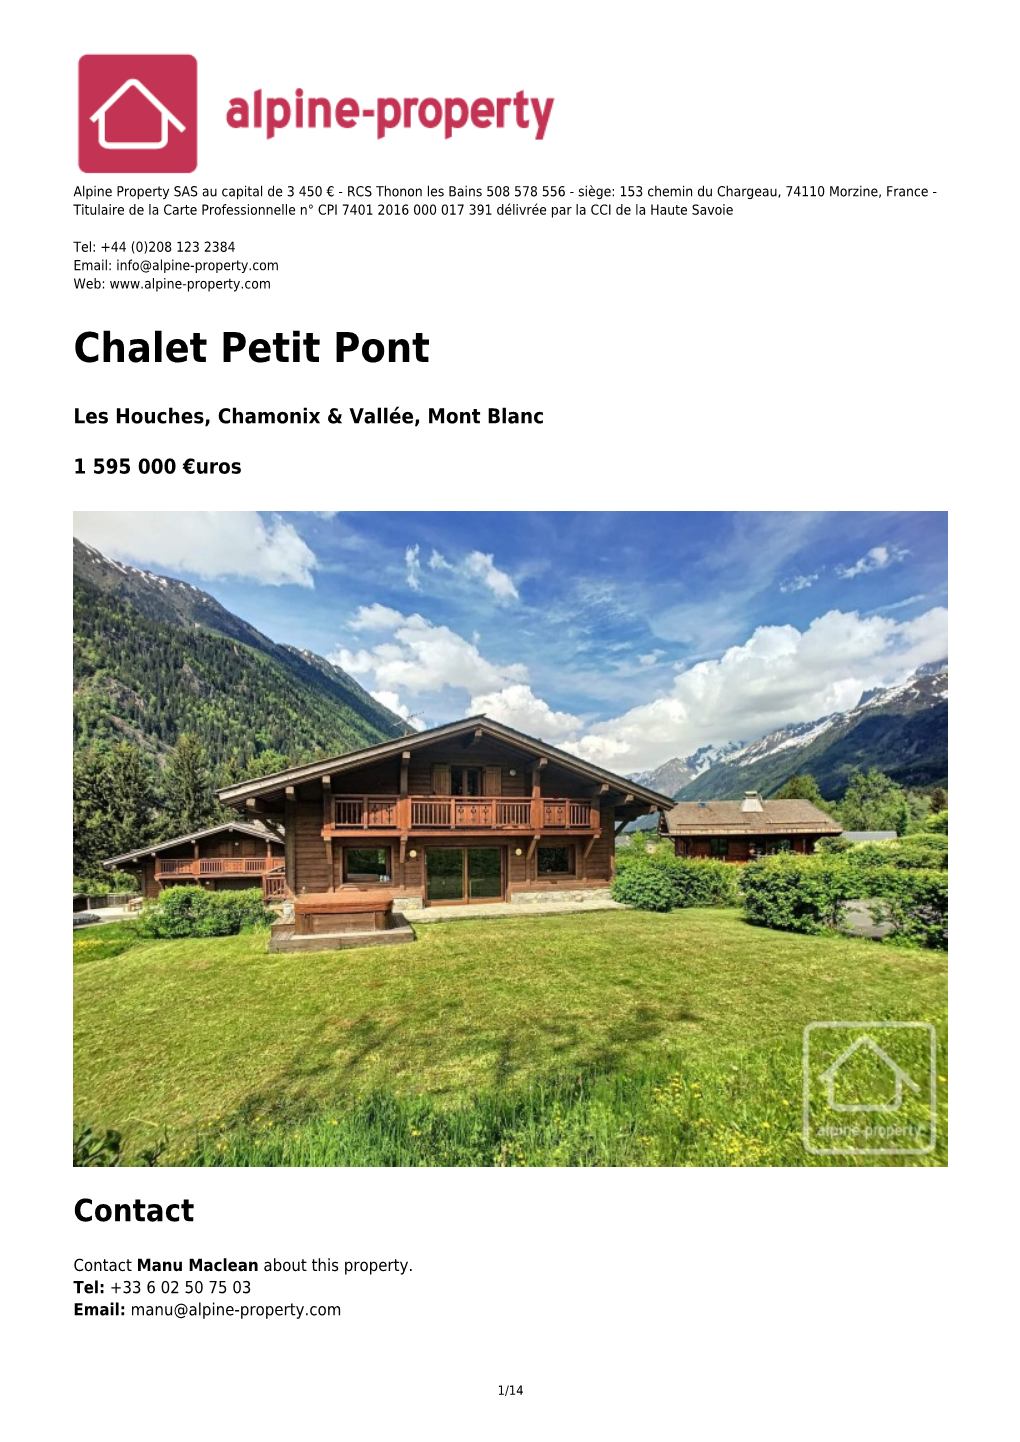 Chalet Petit Pont